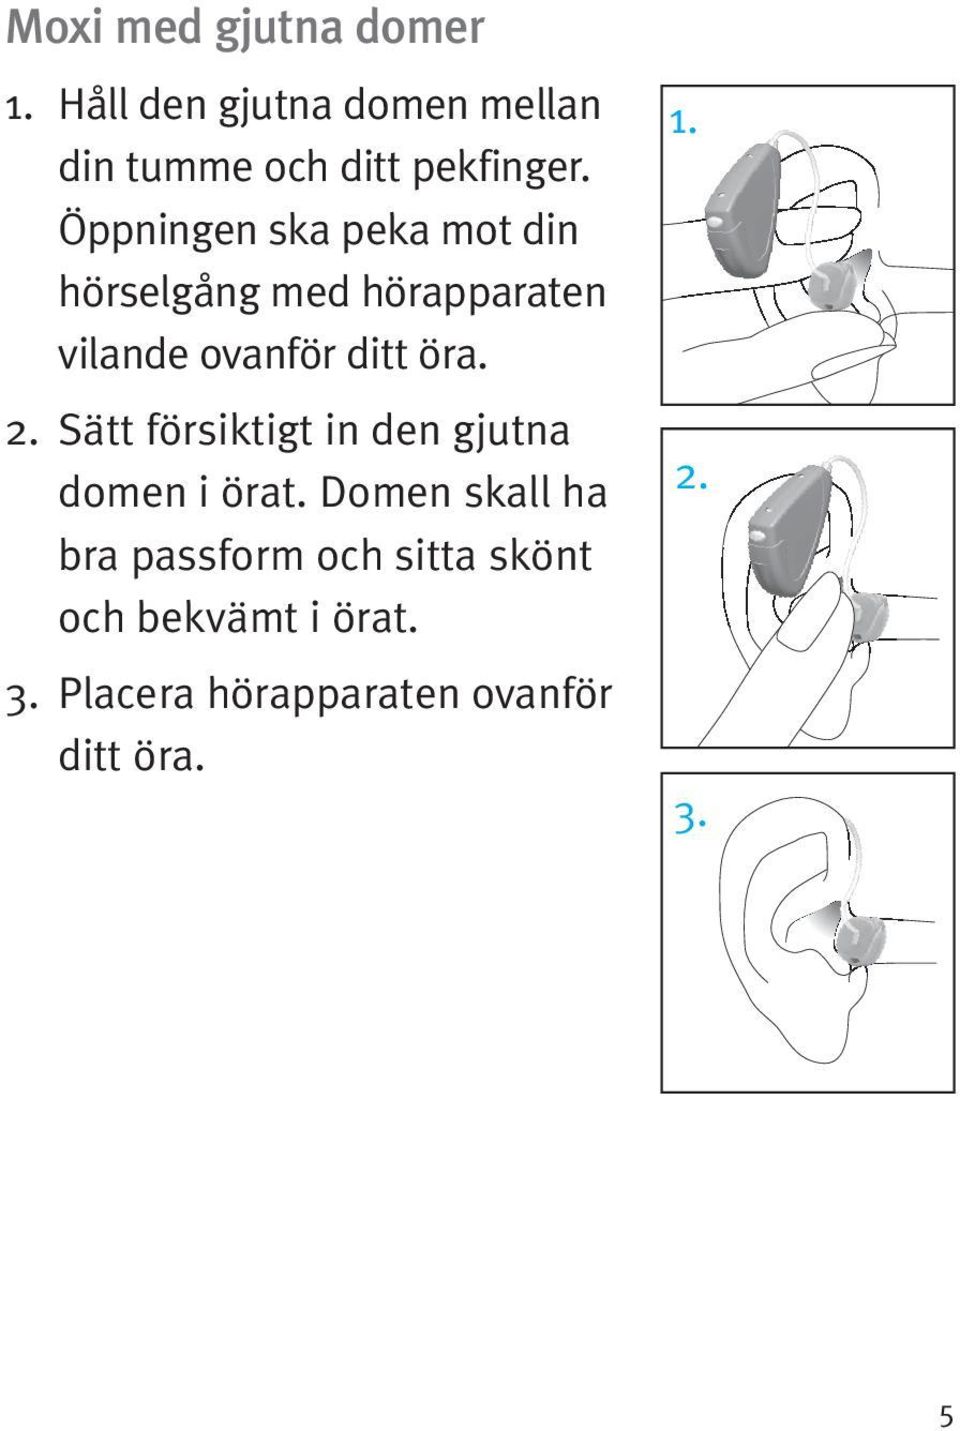 Öppningen ska peka mot din hörselgång med hörapparaten vilande ovanför ditt öra.